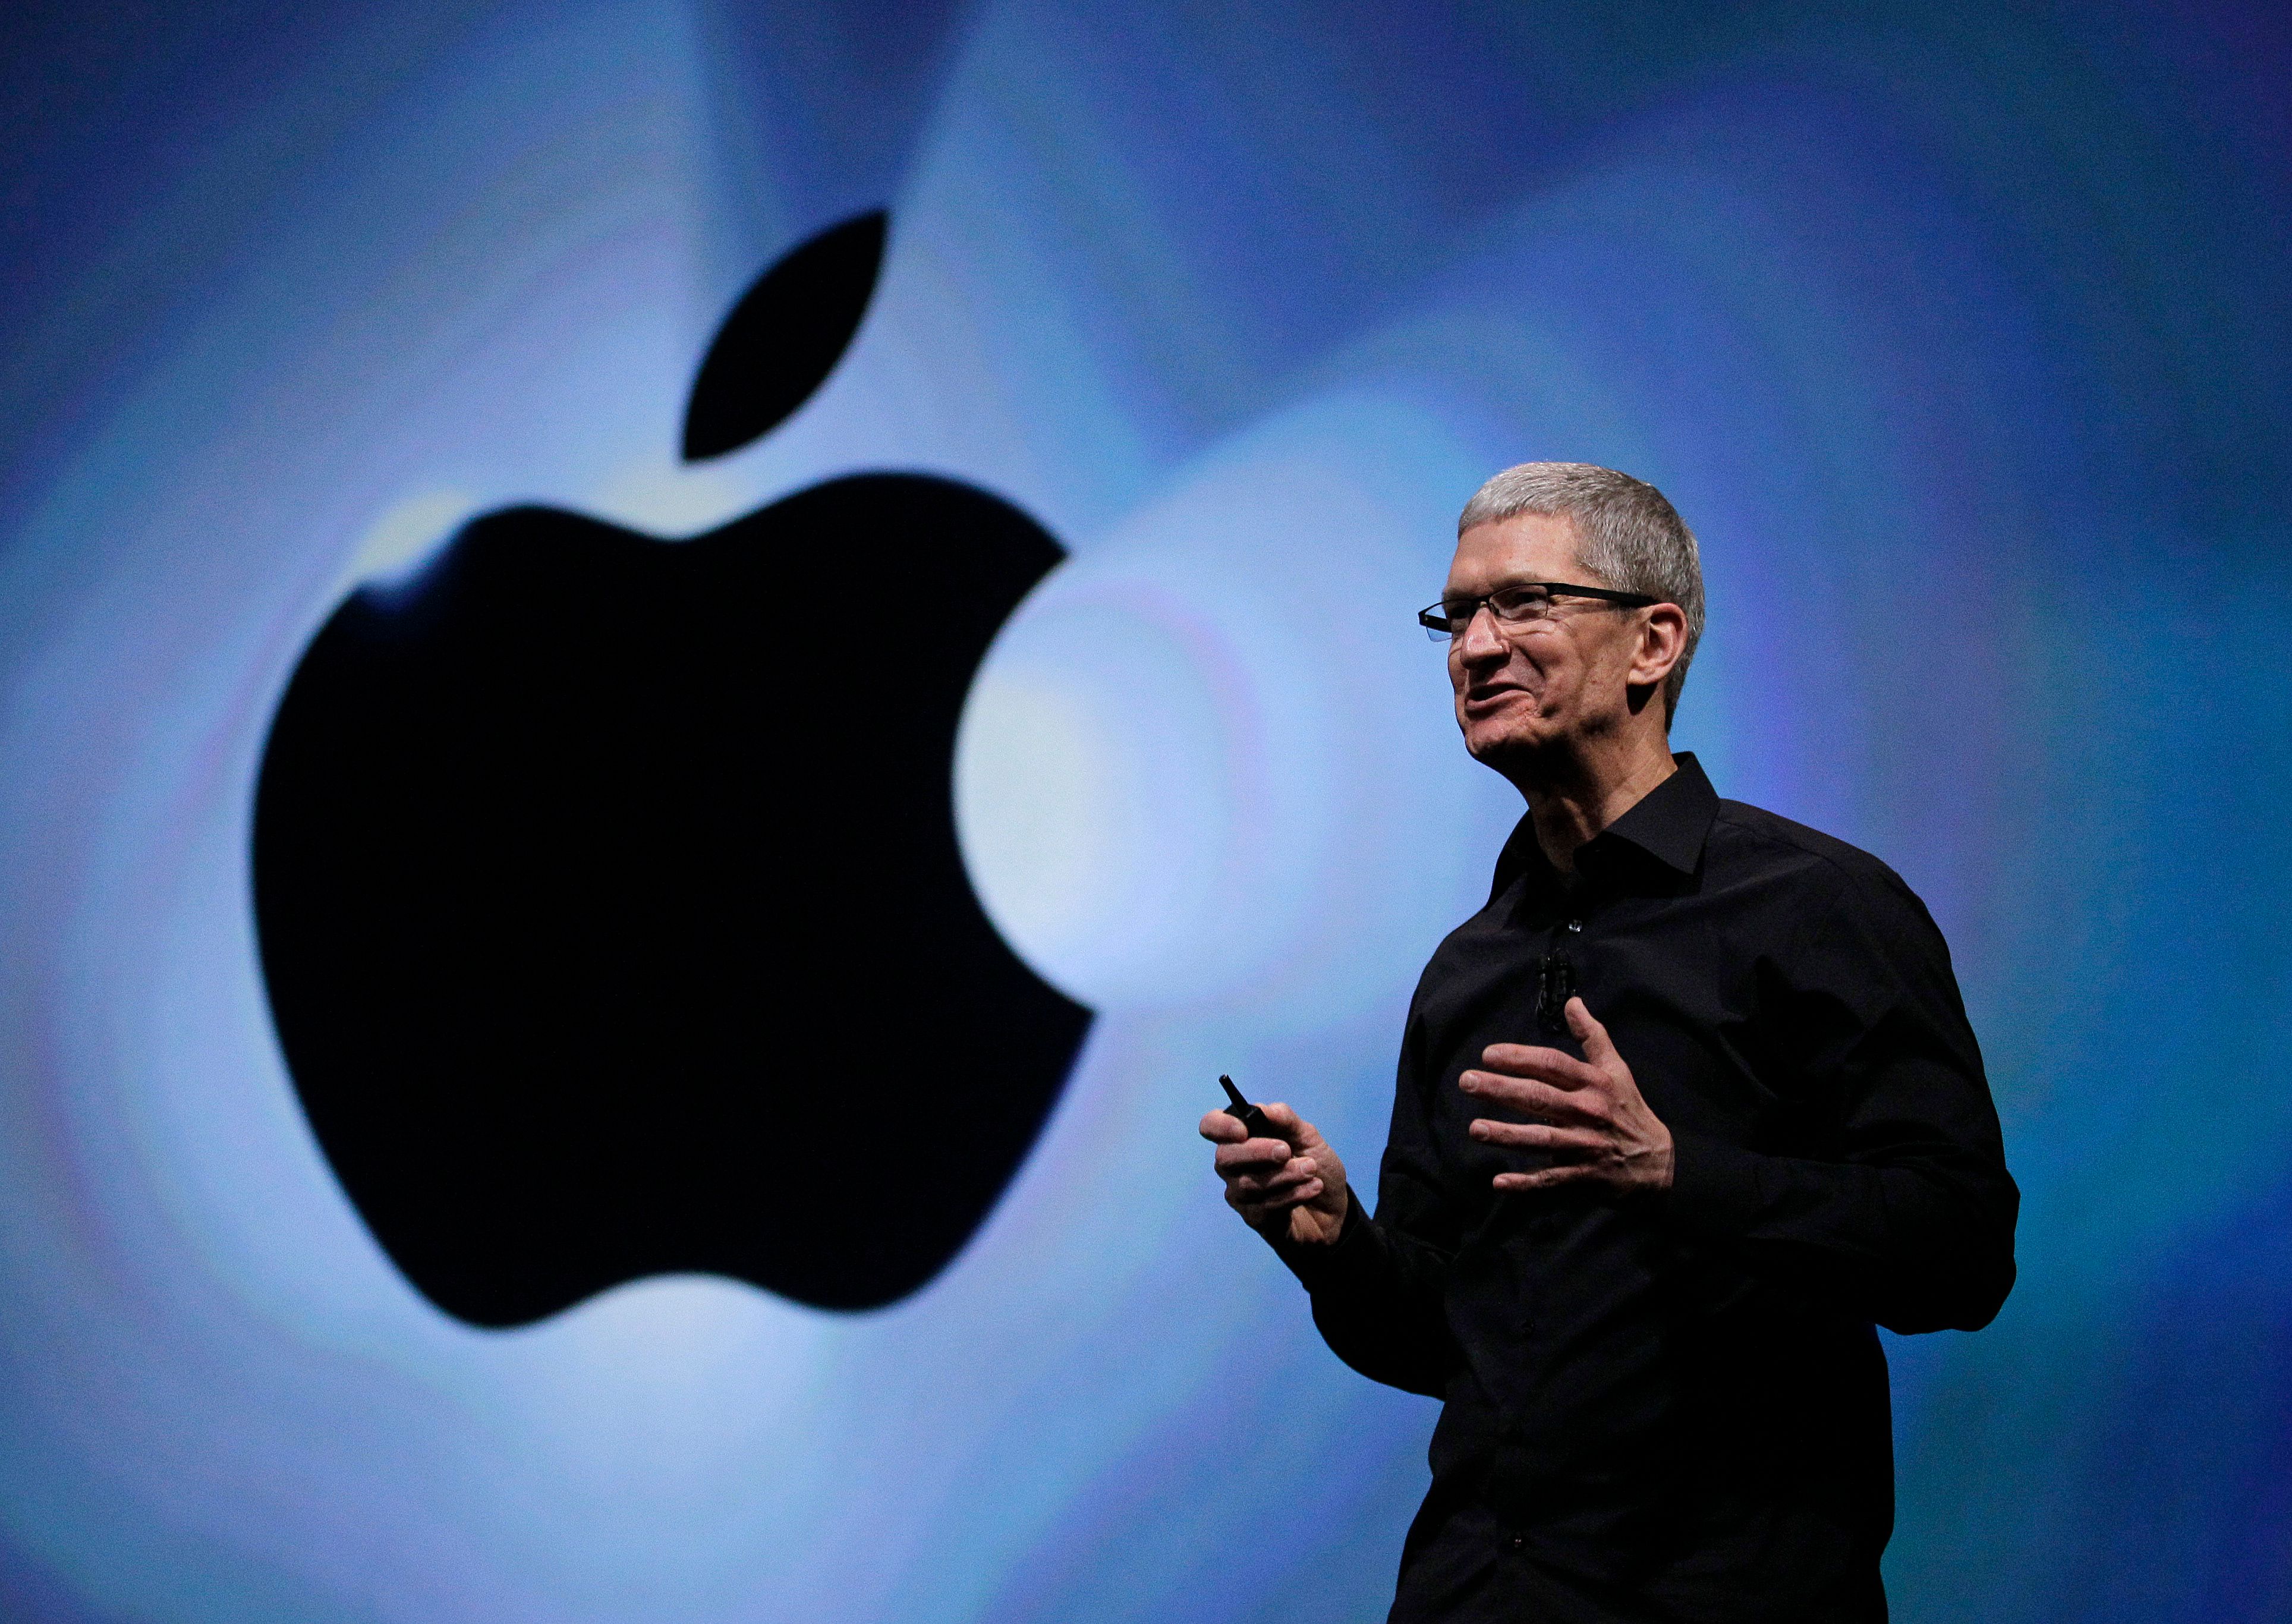 apple announces q2 2013 earnings 43 6bn revenue 9 5 bn net profit 37 4m iphones 19 5m ipads 4m macs image 1